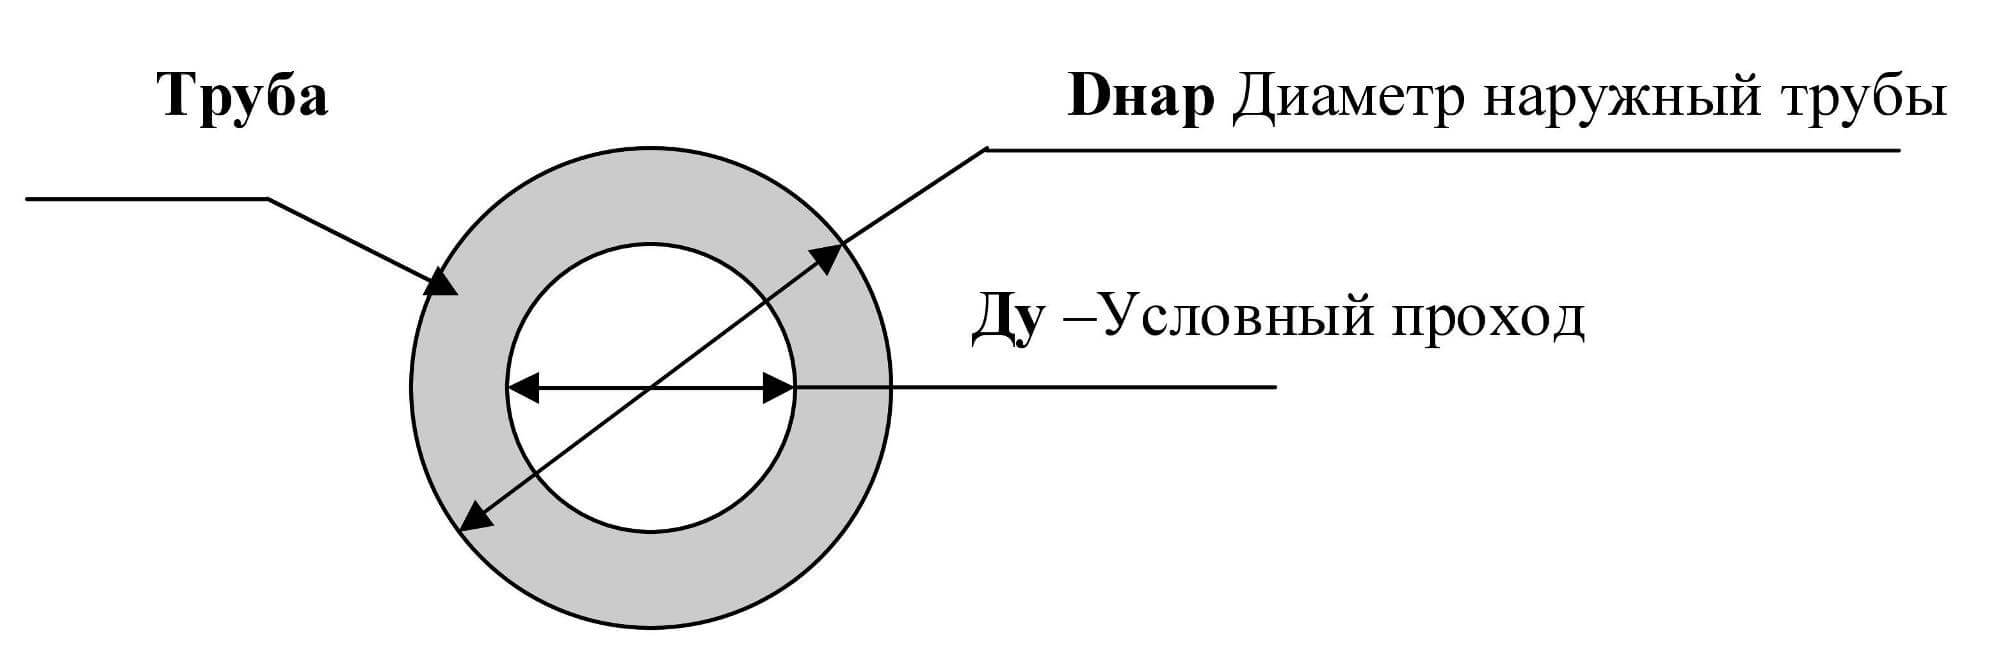 Характеристика и классифицирующие параметры труб вгп